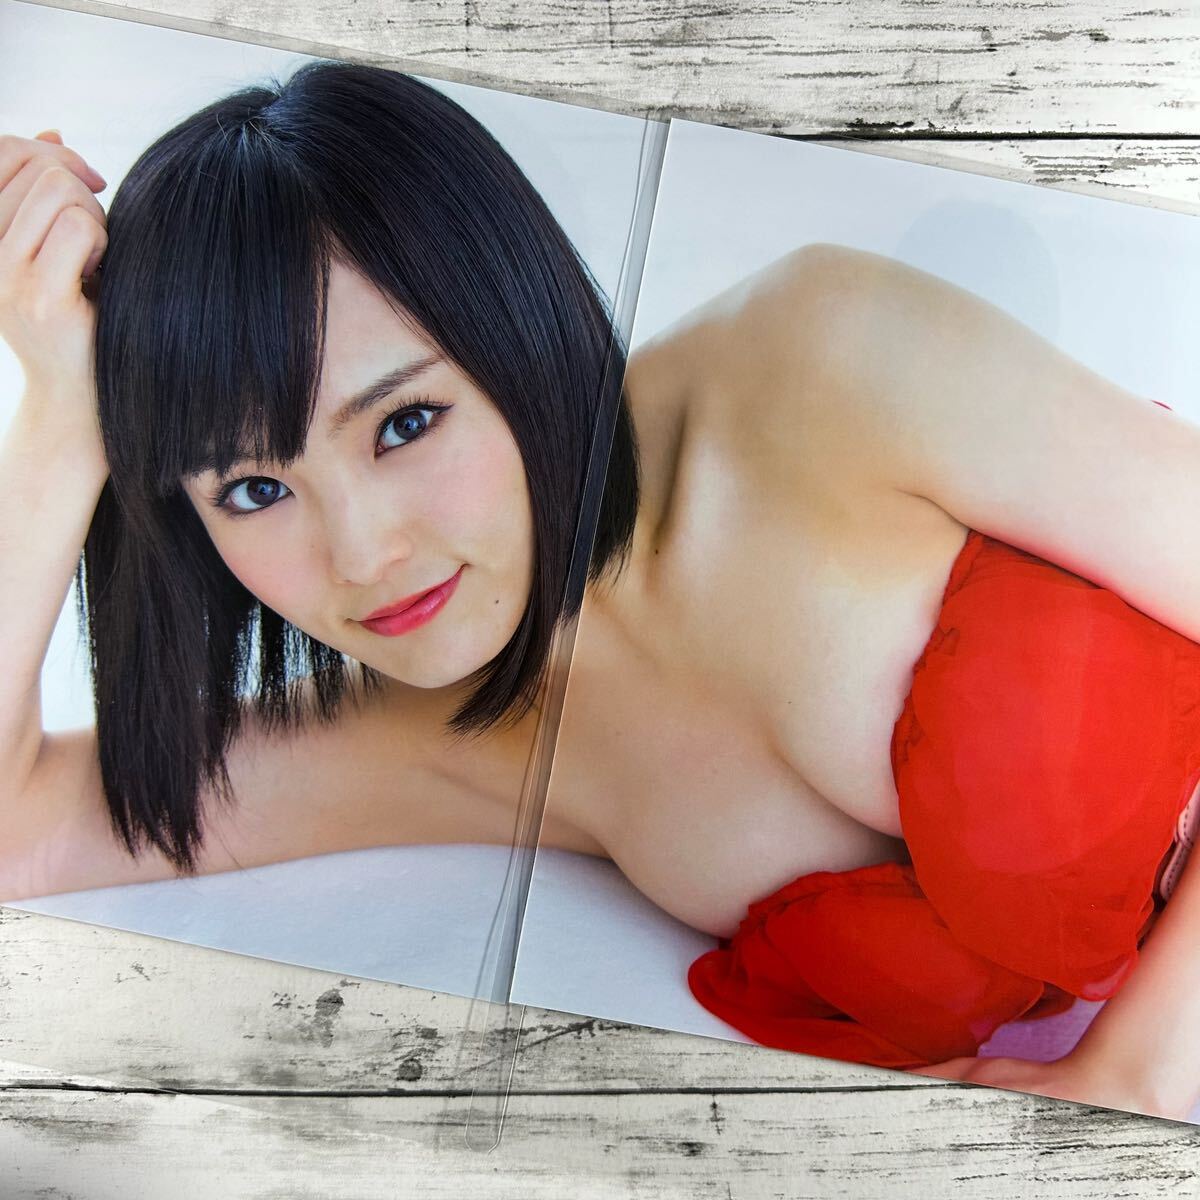 [ высокое качество ламинирование отделка ][ Yamamoto Sayaka NMB48 ] BUBKA 2015 год 2 месяц номер журнал вырезки 8P A4 плёнка купальный костюм bikini model актер женщина super 